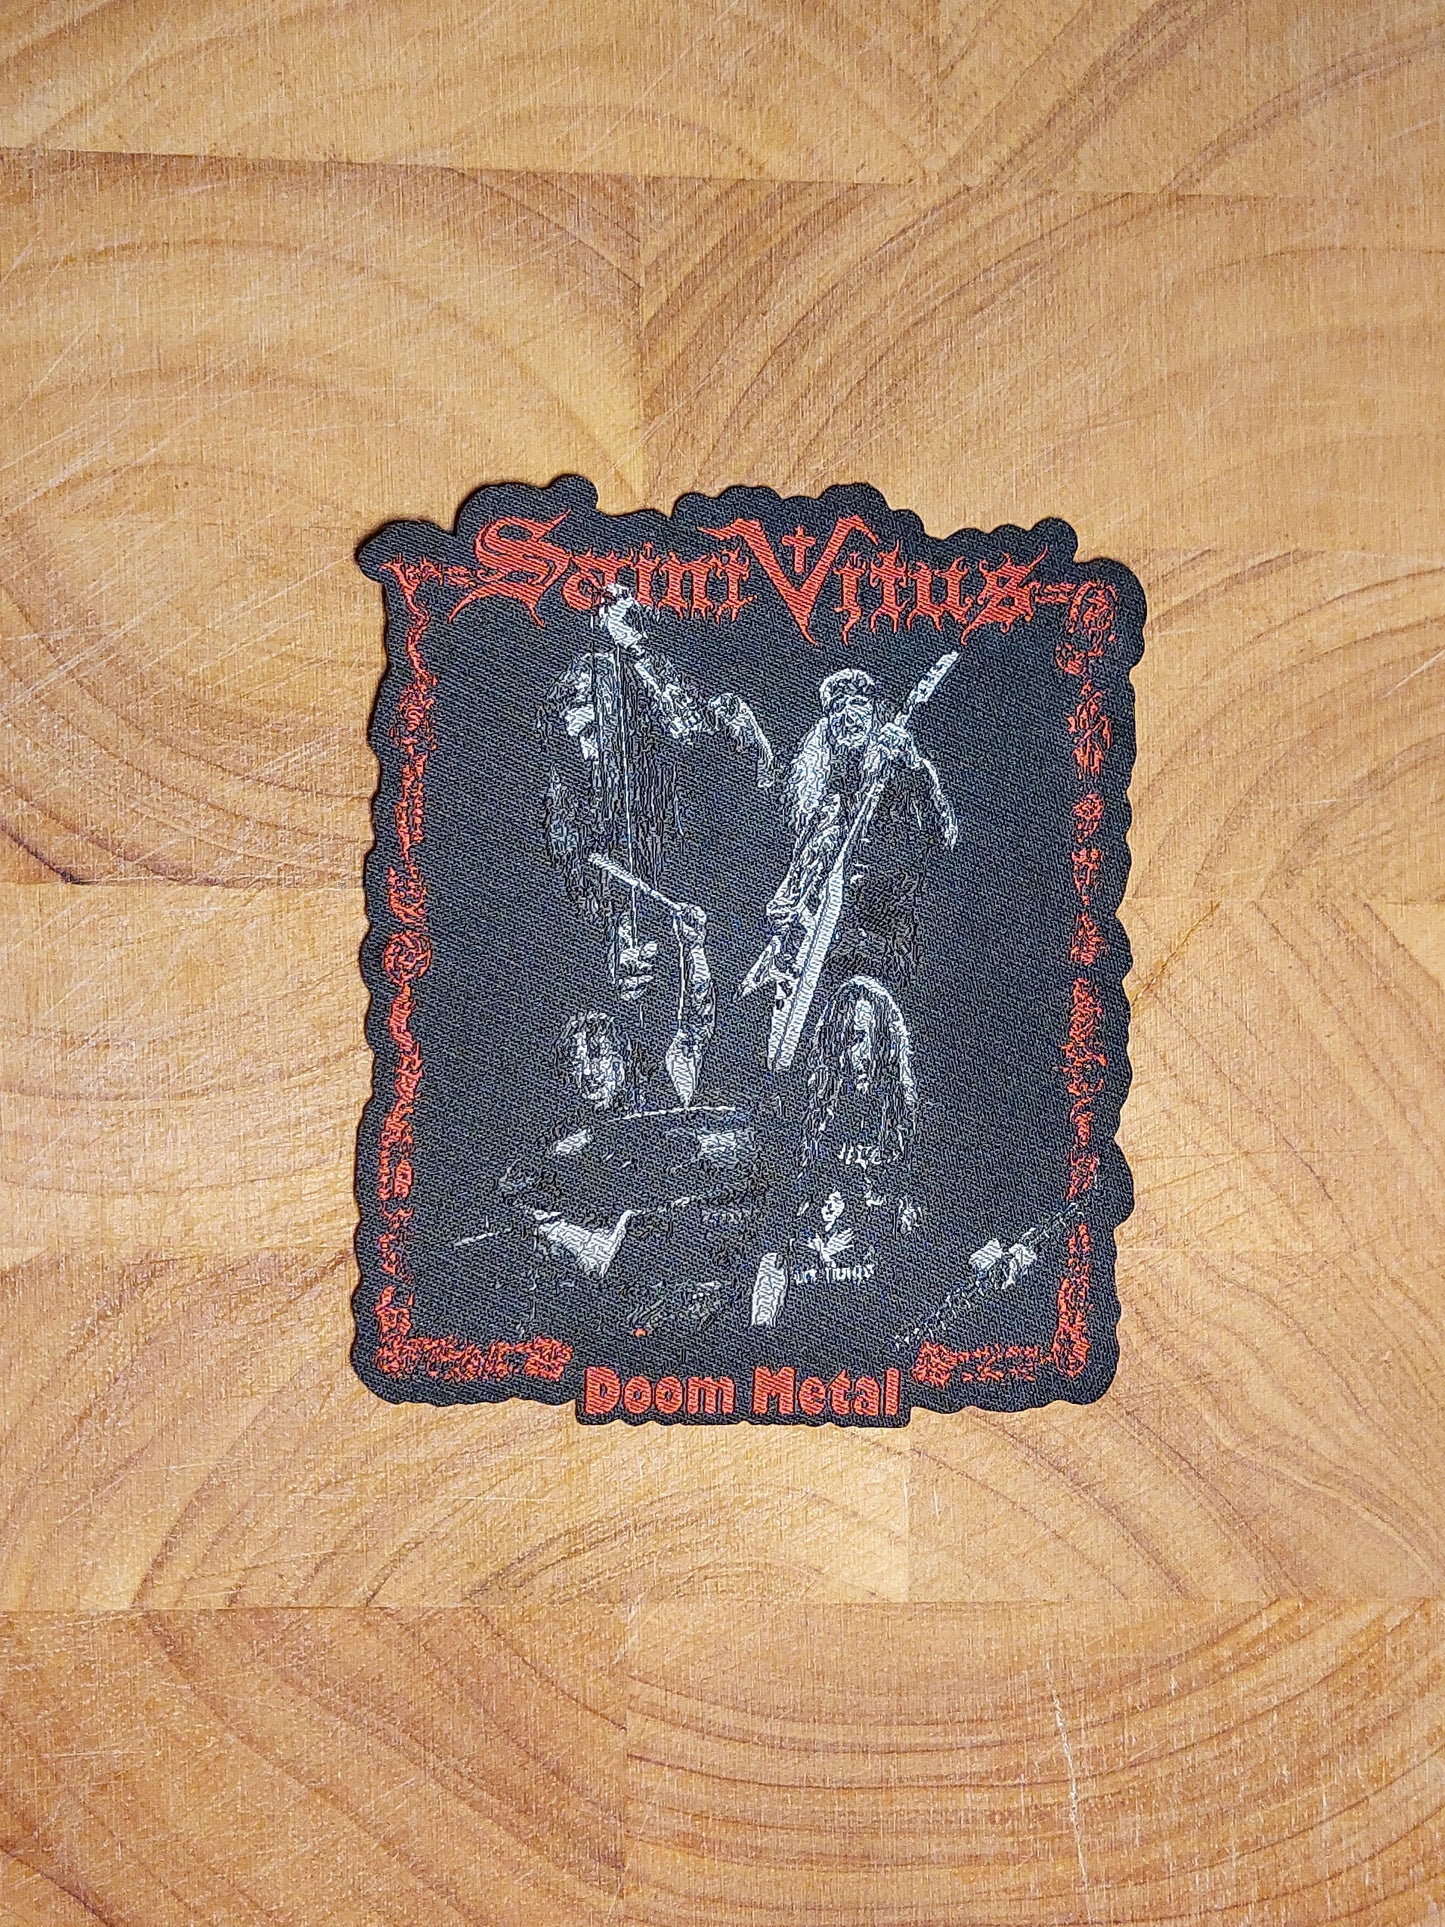 Saint vitus doom metal